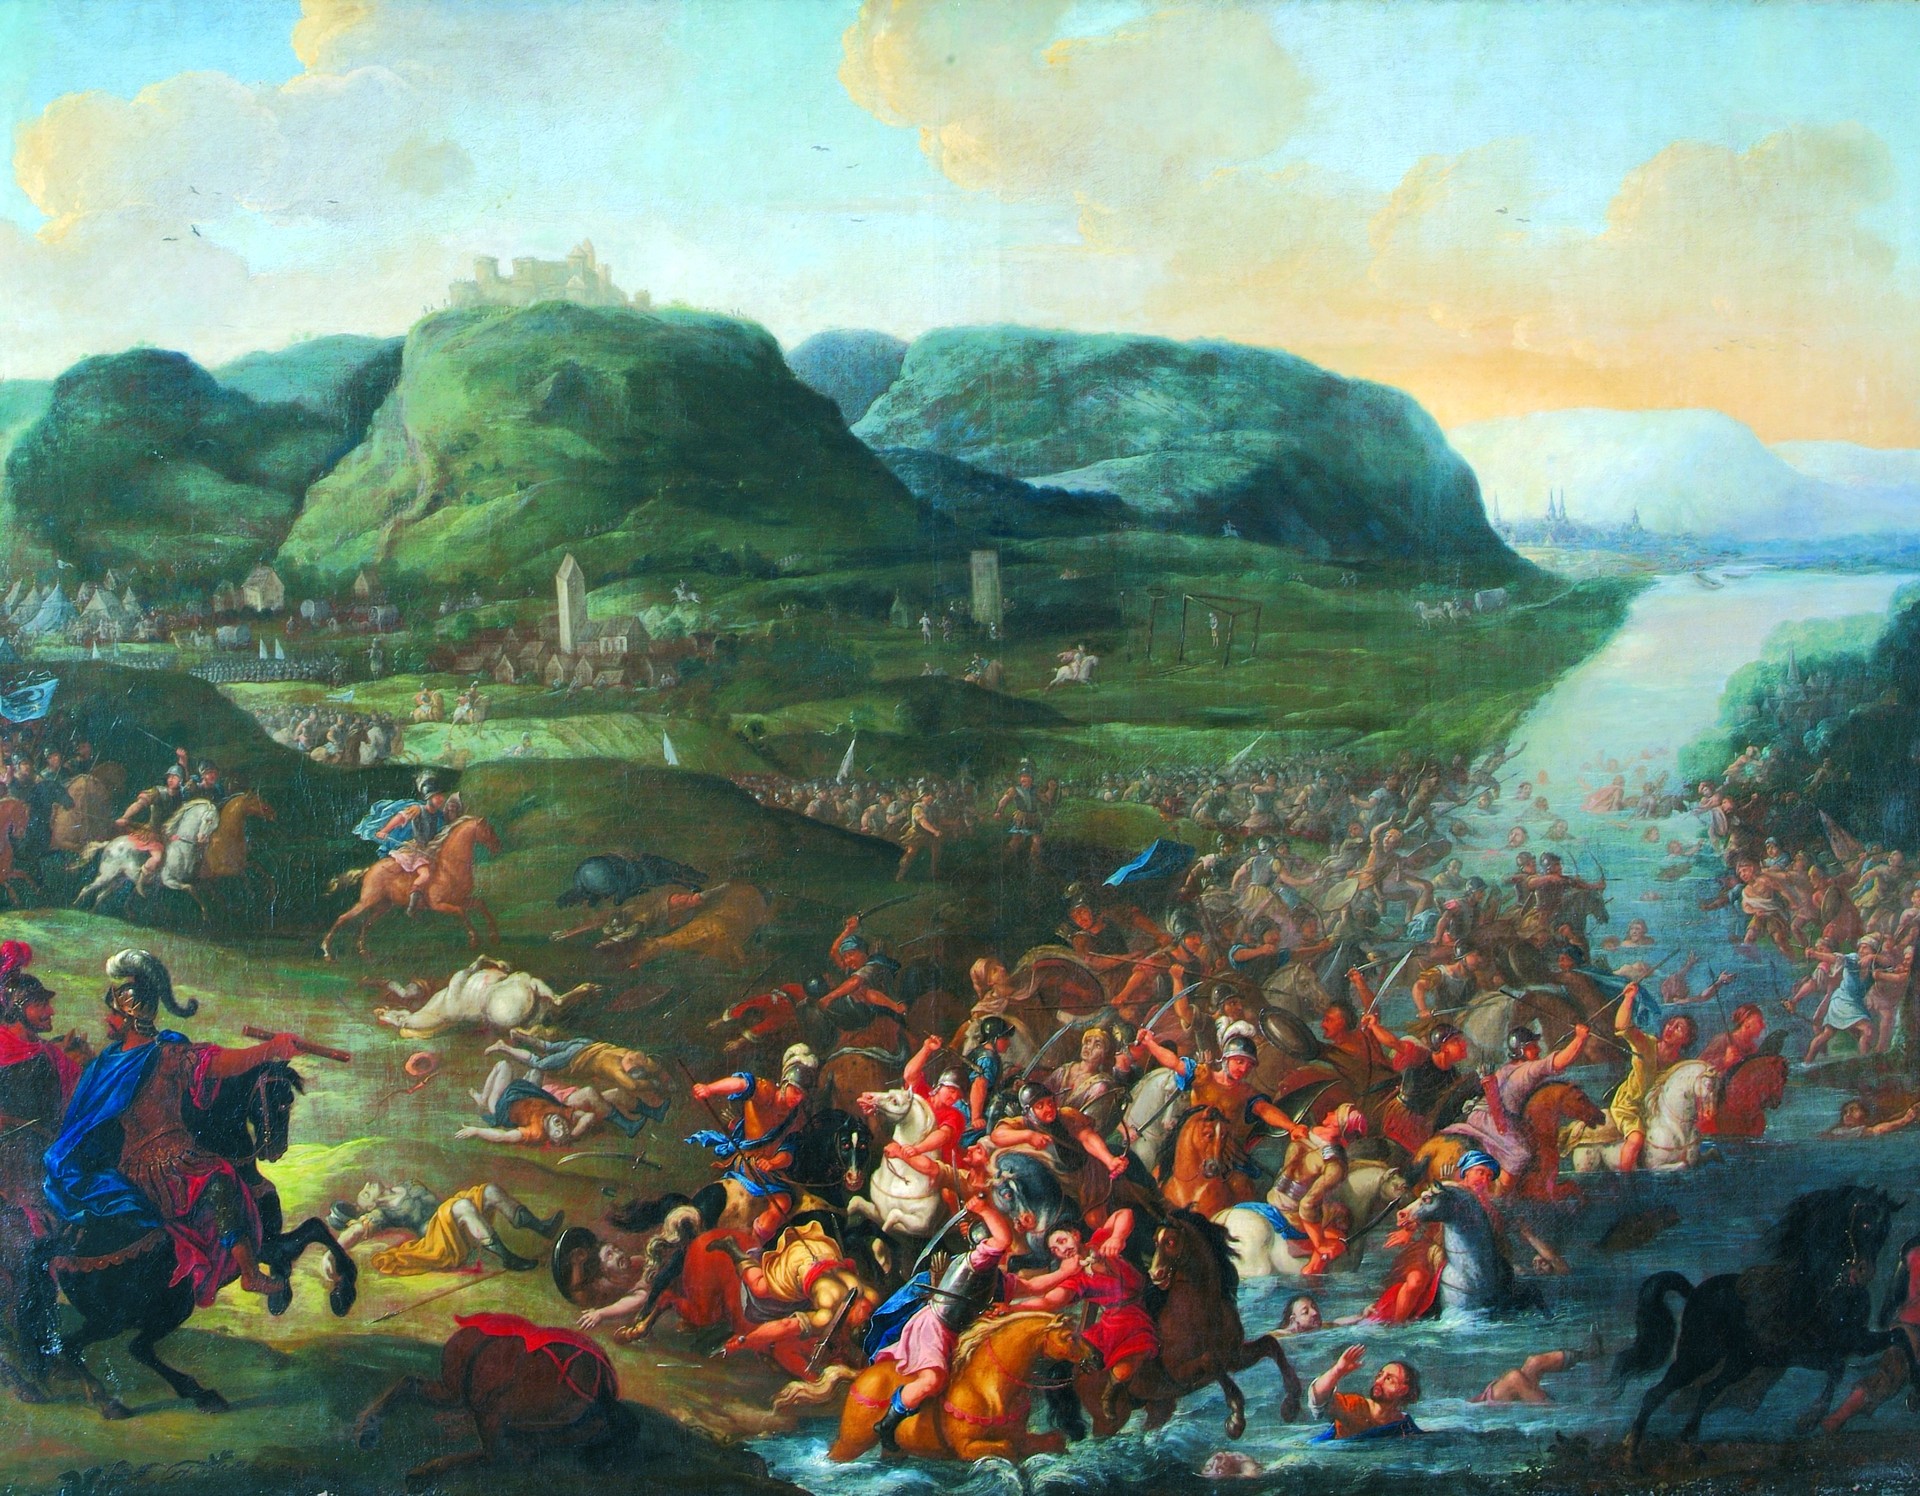 Gemälde "Die Schlacht am Brunsberg 775" von Hieronymus Sies von 1704 (GSV Städteatlas Verlag/Krukemeyer).